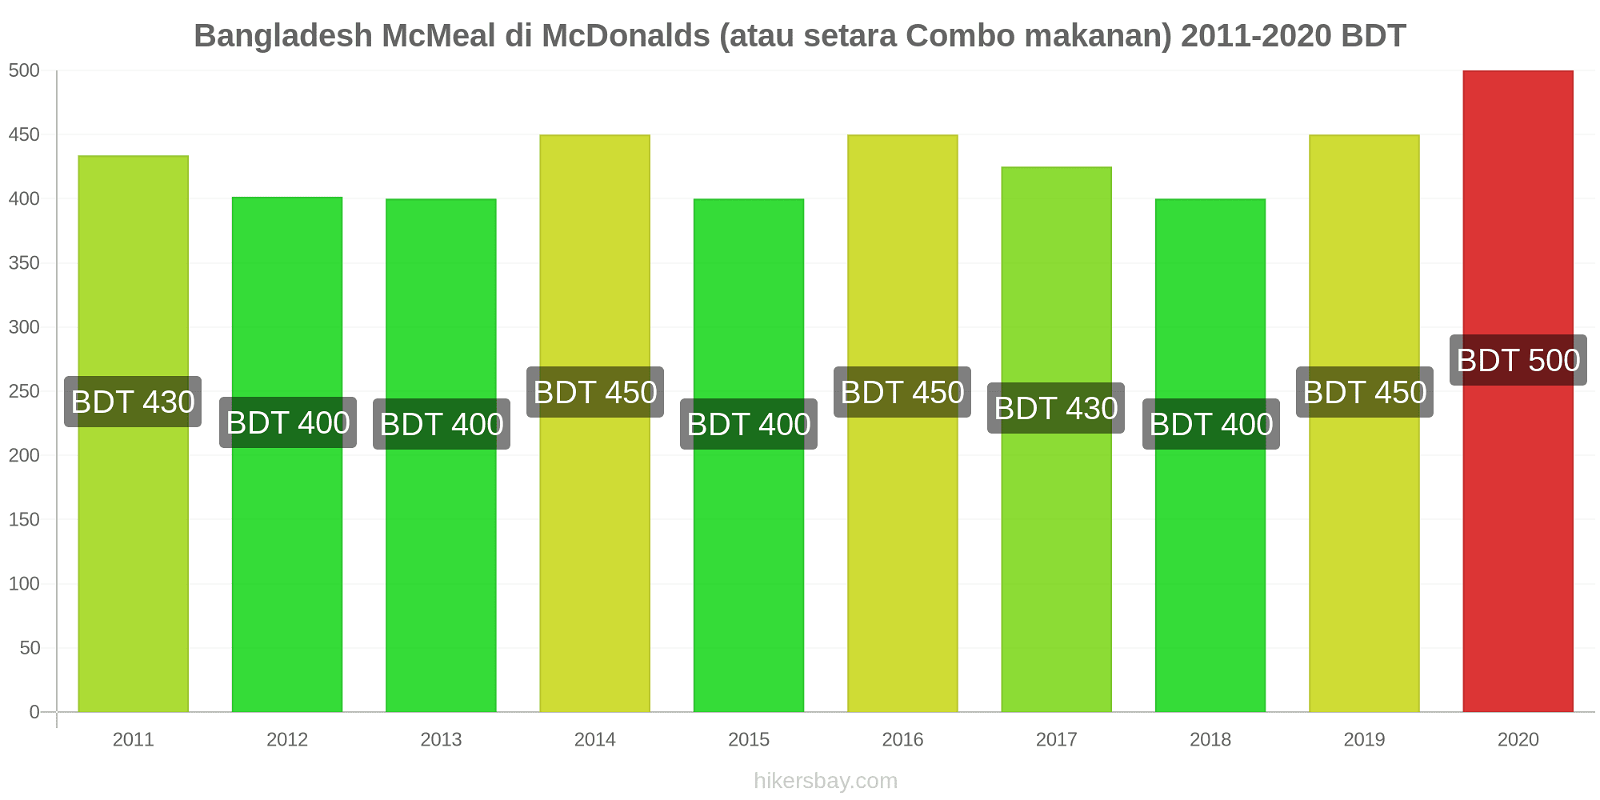 Bangladesh perubahan harga McMeal di McDonalds (atau setara Combo makanan) hikersbay.com